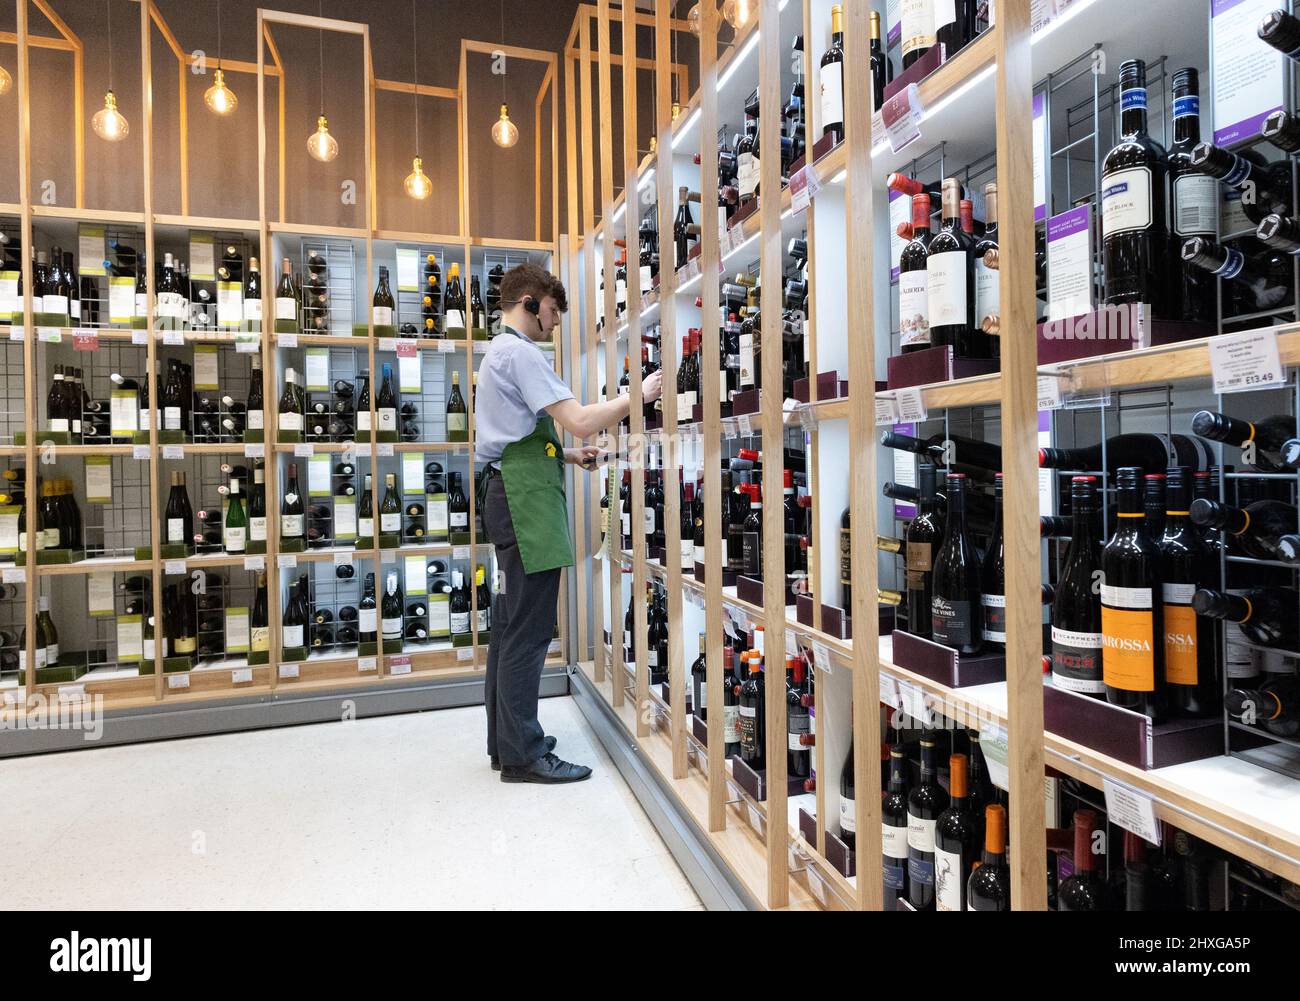 Supermarket Wine Department UK; un membre du personnel travaillant dans l'allée des vins, waitrose Supermarket UK Banque D'Images